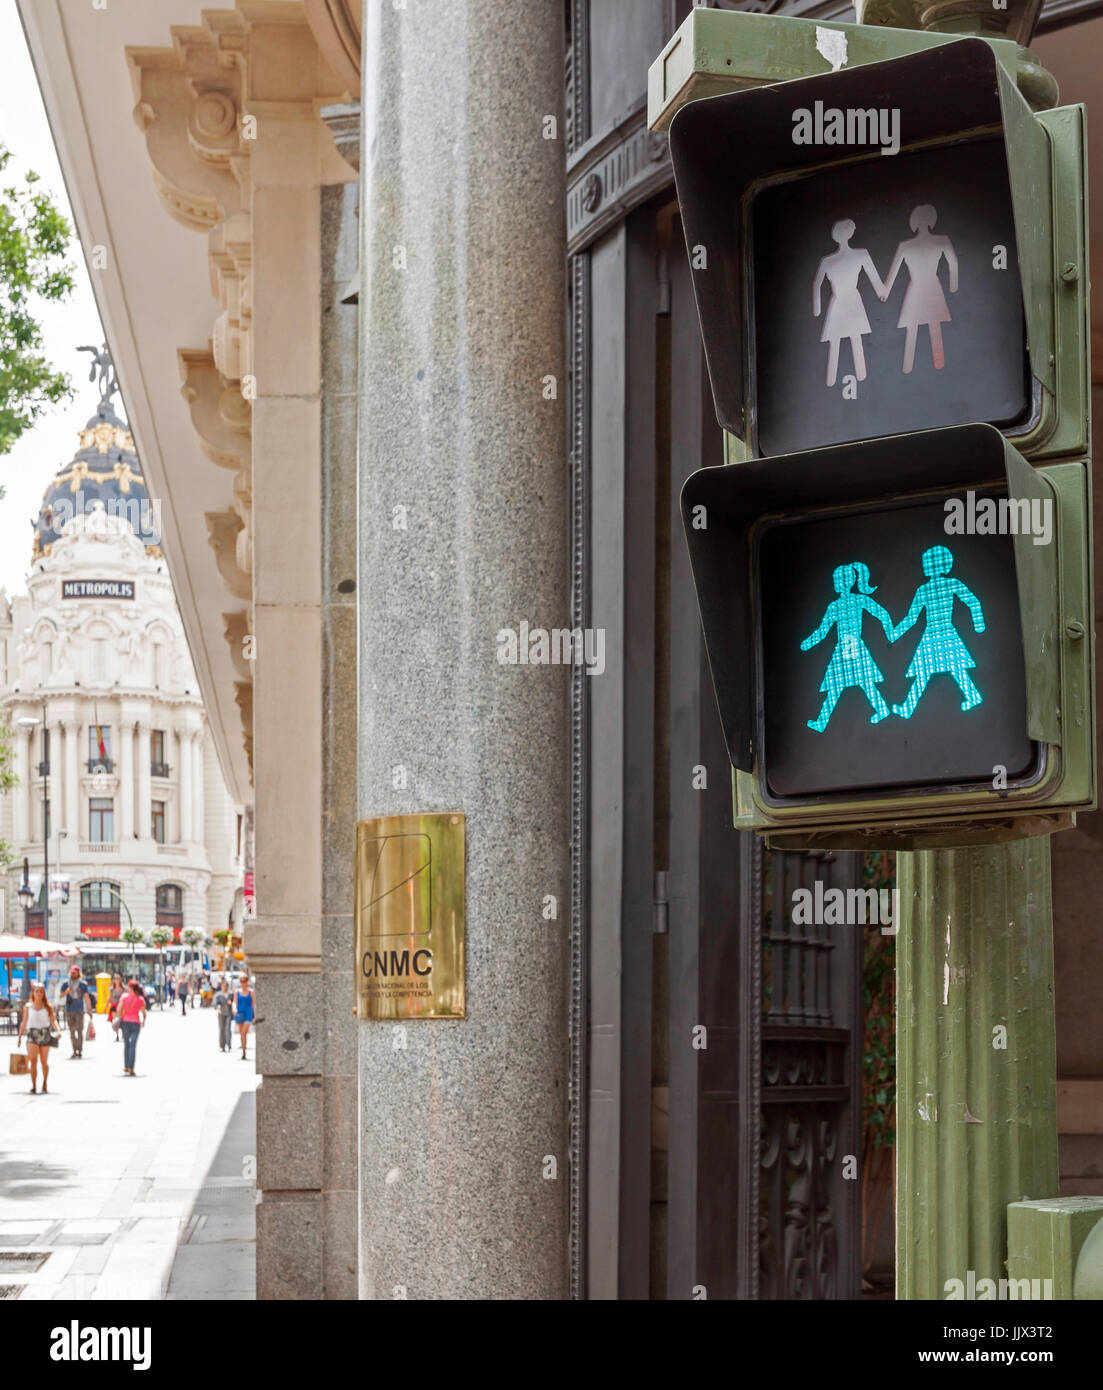 Semáforos LGBTI Instalados En Madrid con trancigen del Día del Orgullo gay. Stockfoto